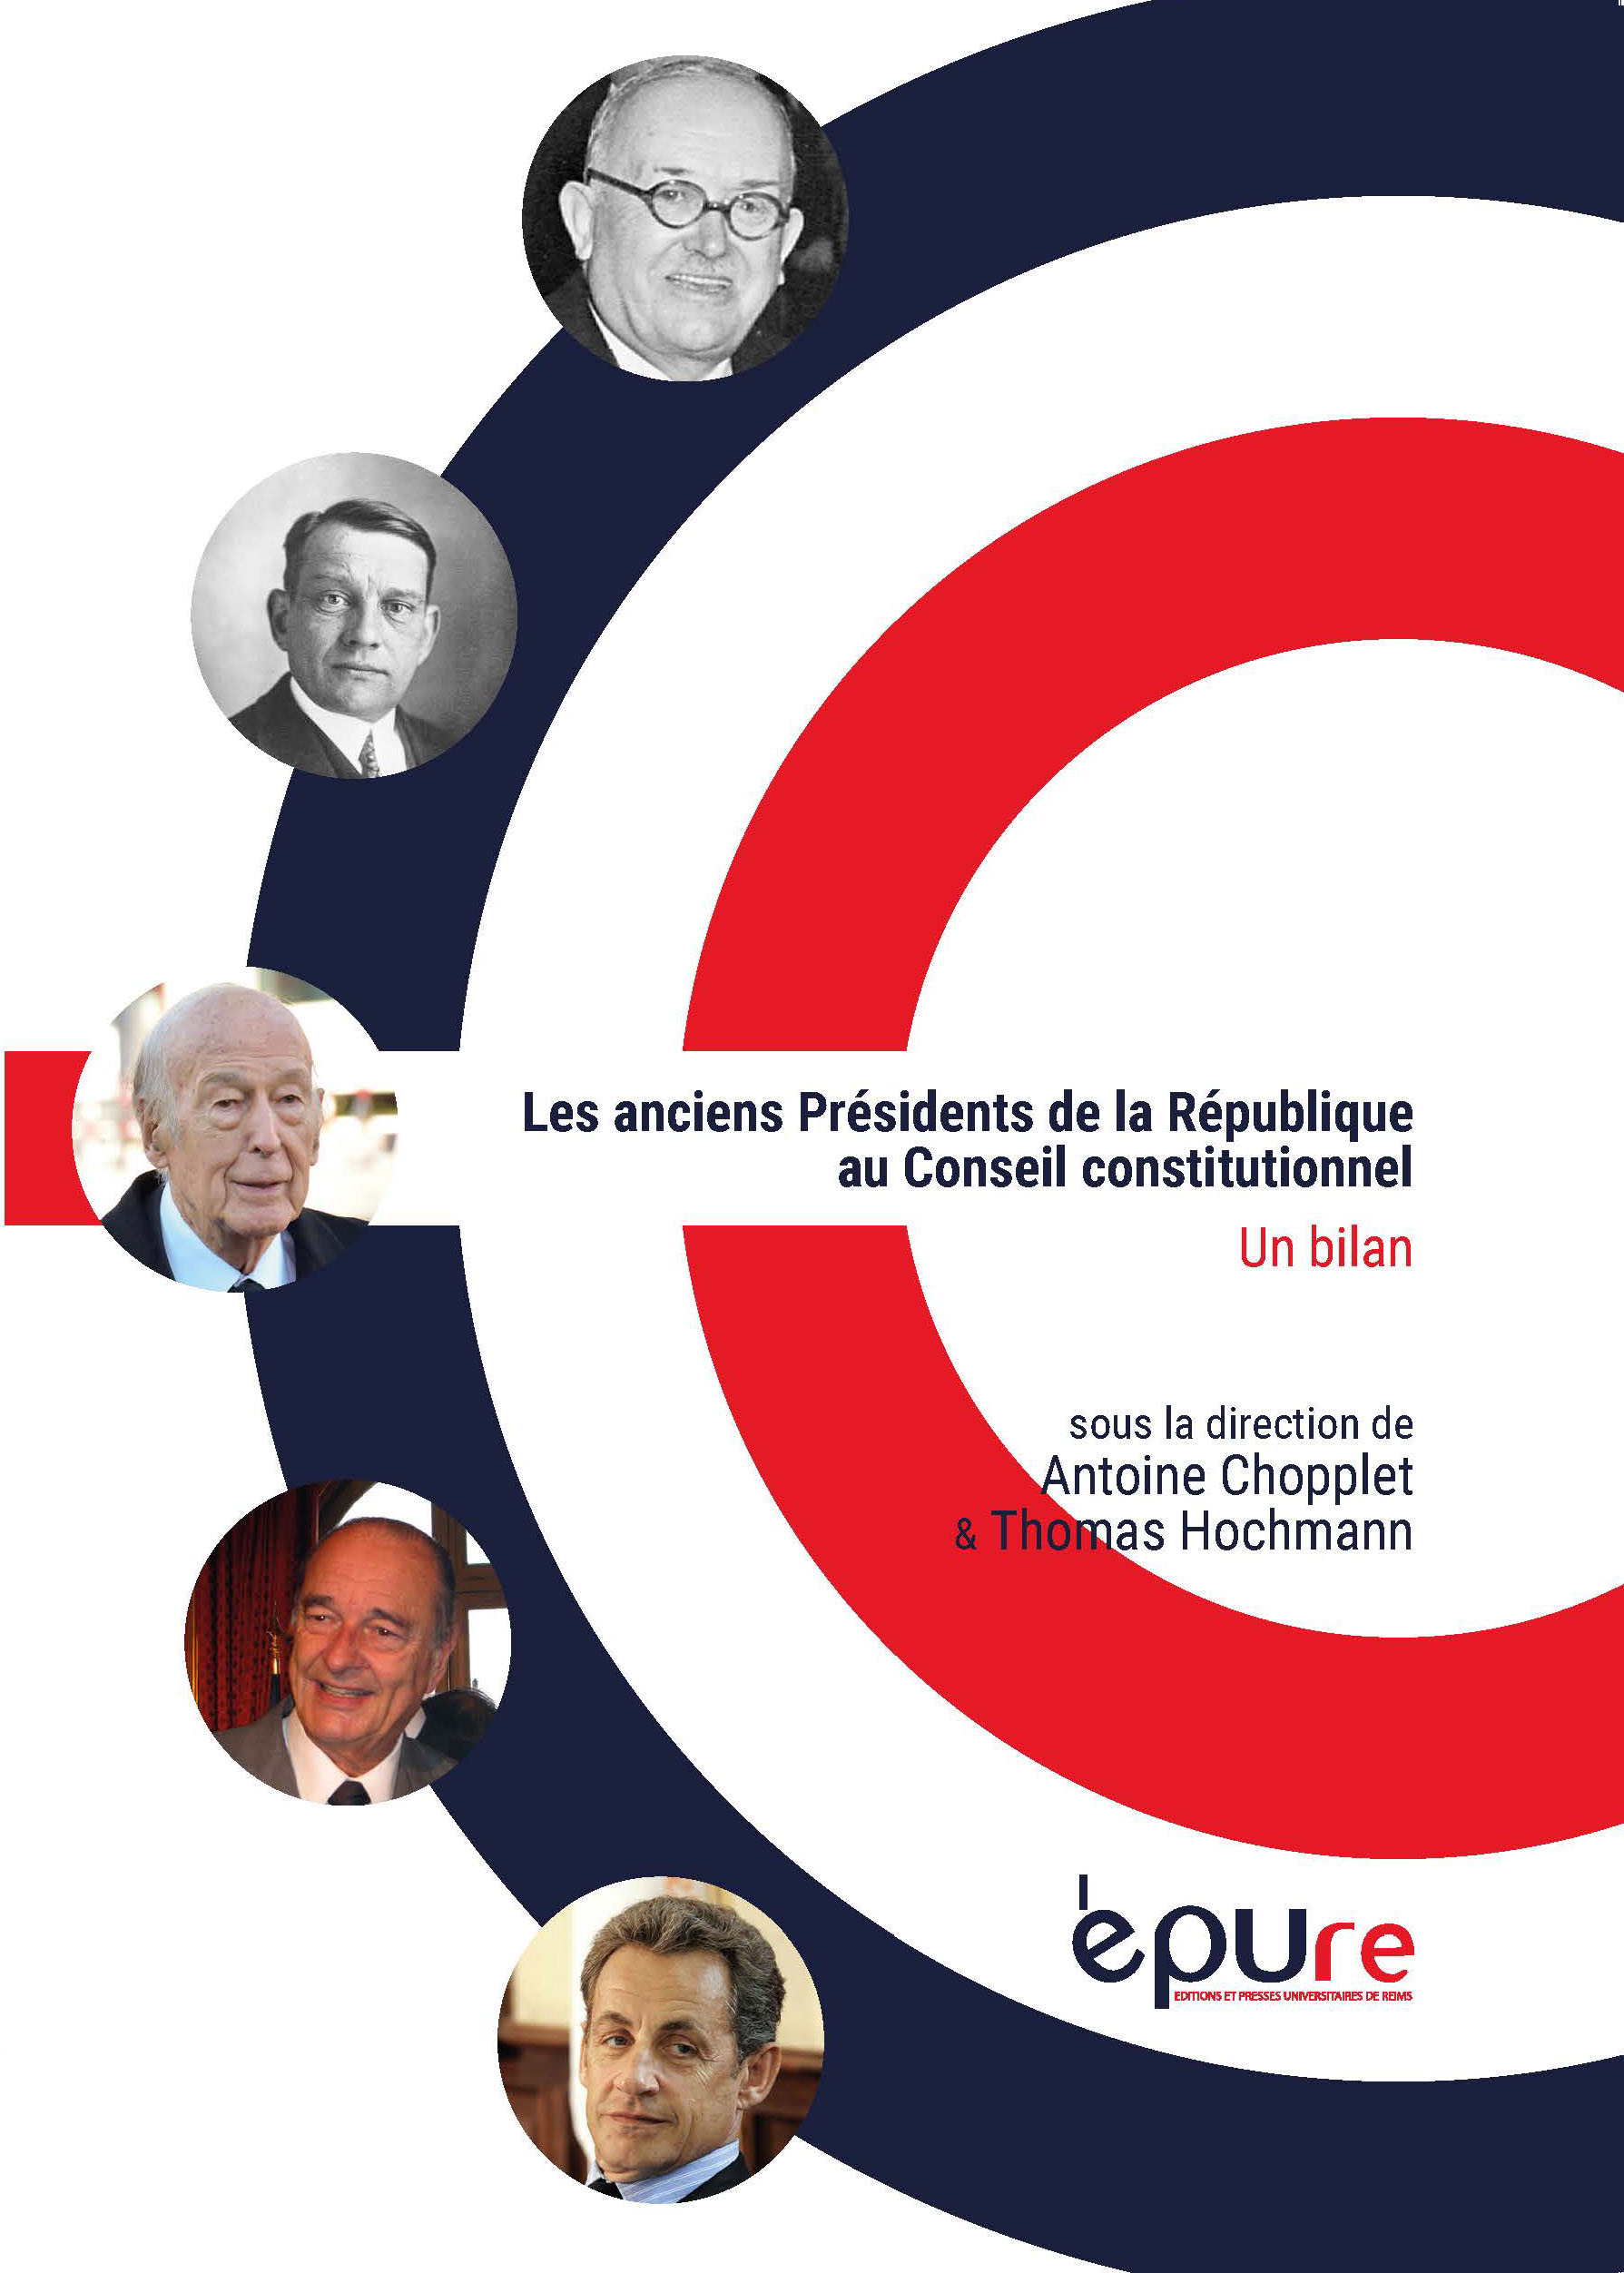 Les anciens Présidents de la République au Conseil constitutionnel